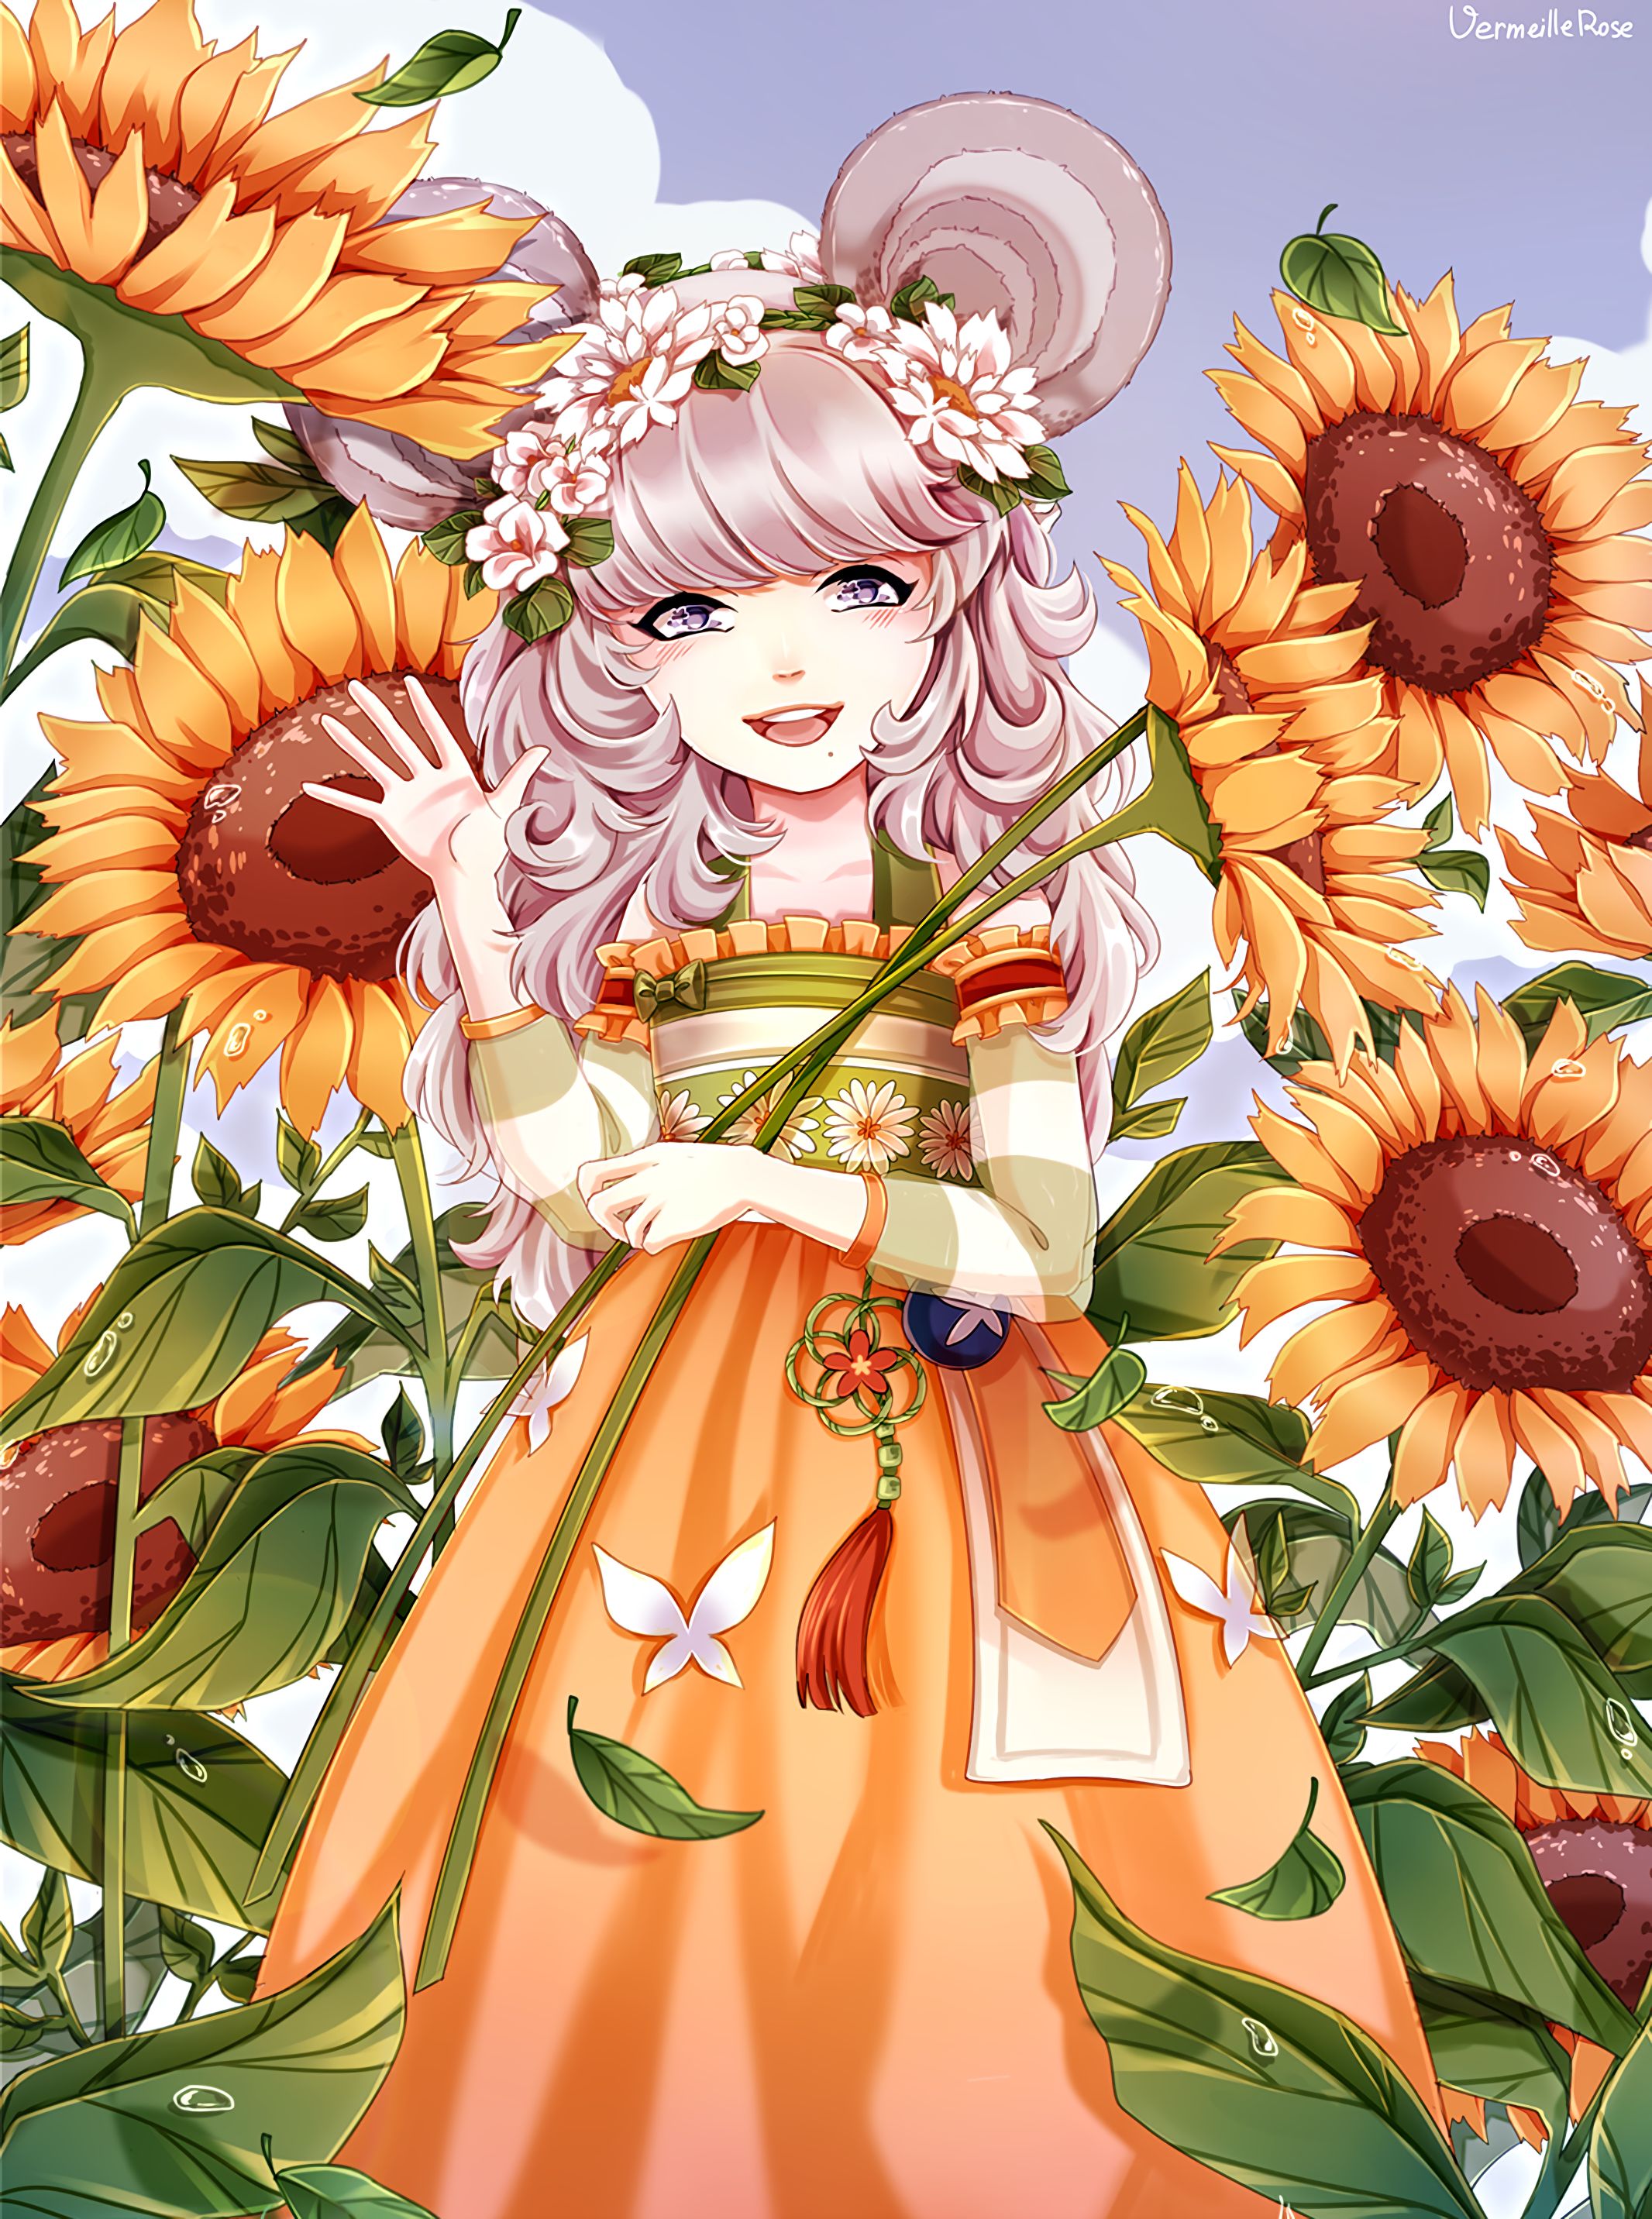 Aesthetic wallpaper art, anime, sunflowers, girl